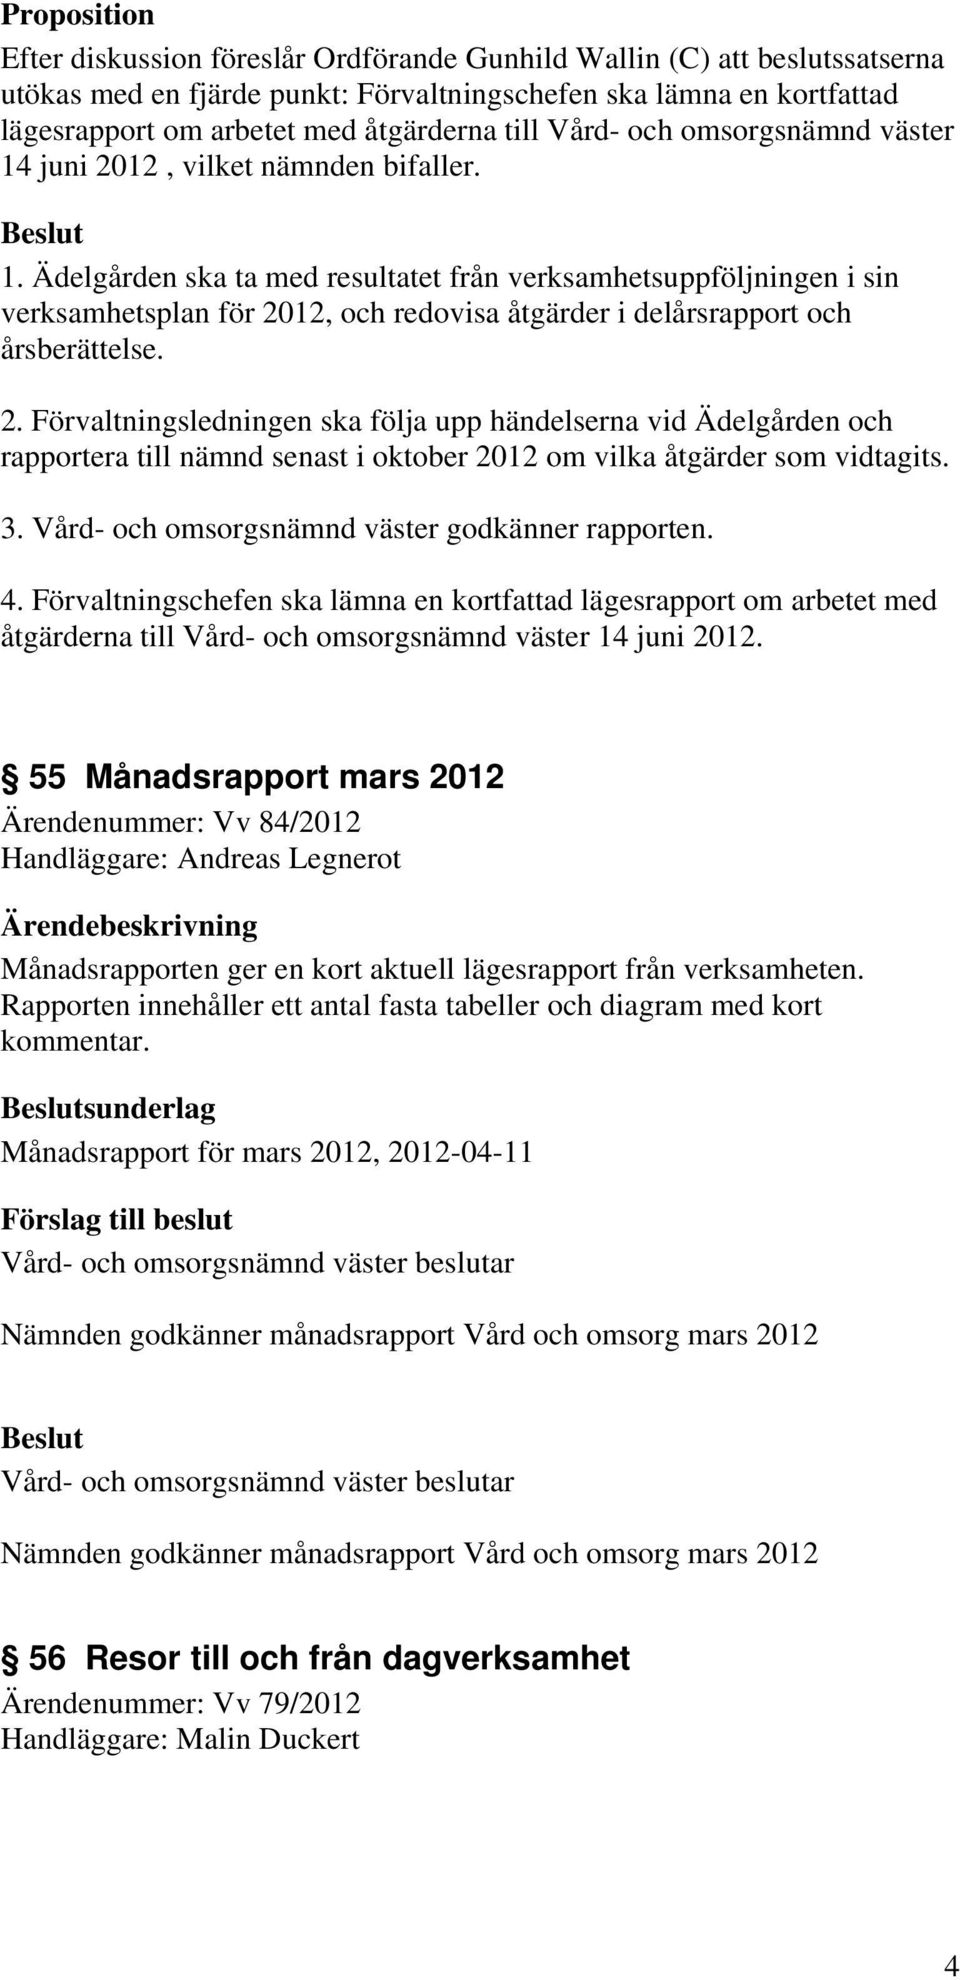 2. Förvaltningsledningen ska följa upp händelserna vid Ädelgården och rapportera till nämnd senast i oktober 2012 om vilka åtgärder som vidtagits. 3. Vård- och omsorgsnämnd väster godkänner rapporten.